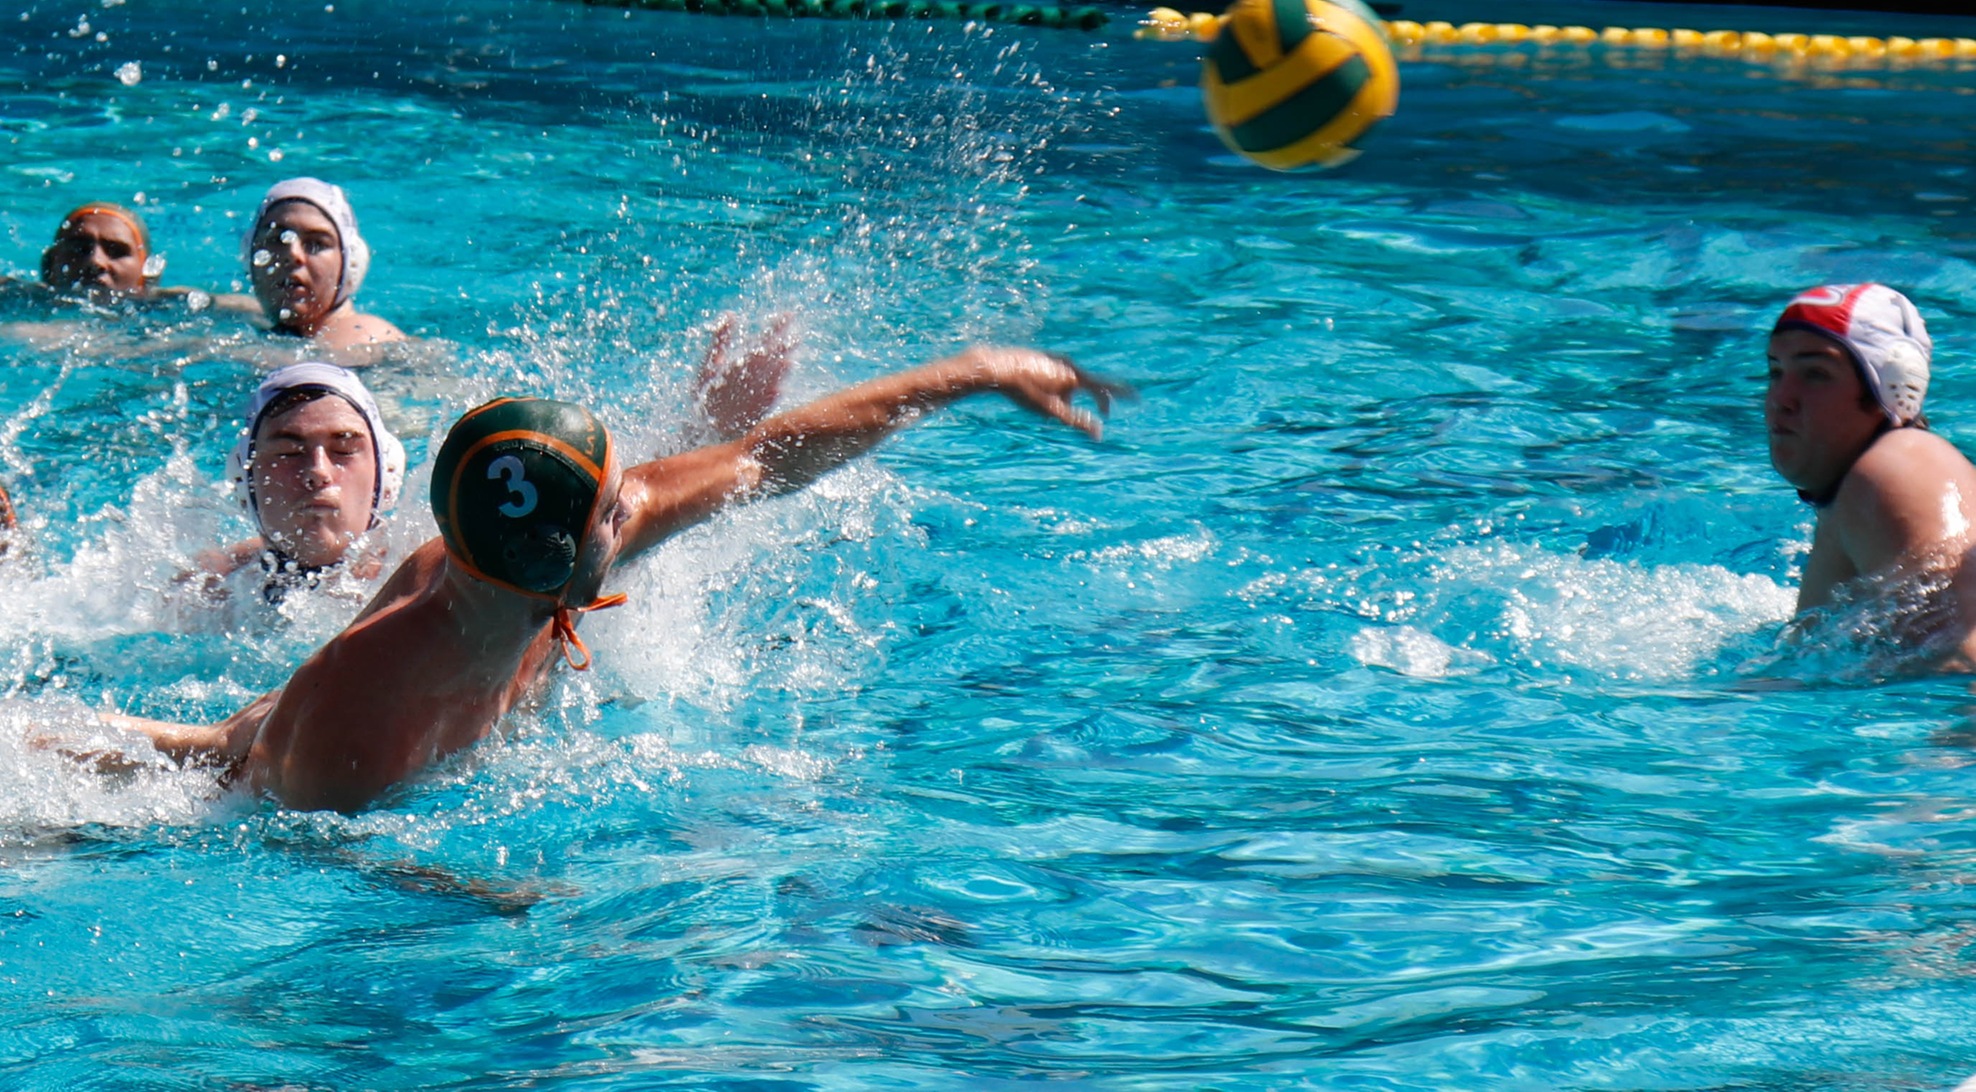 Men's Water Polo celebrates winning weekend